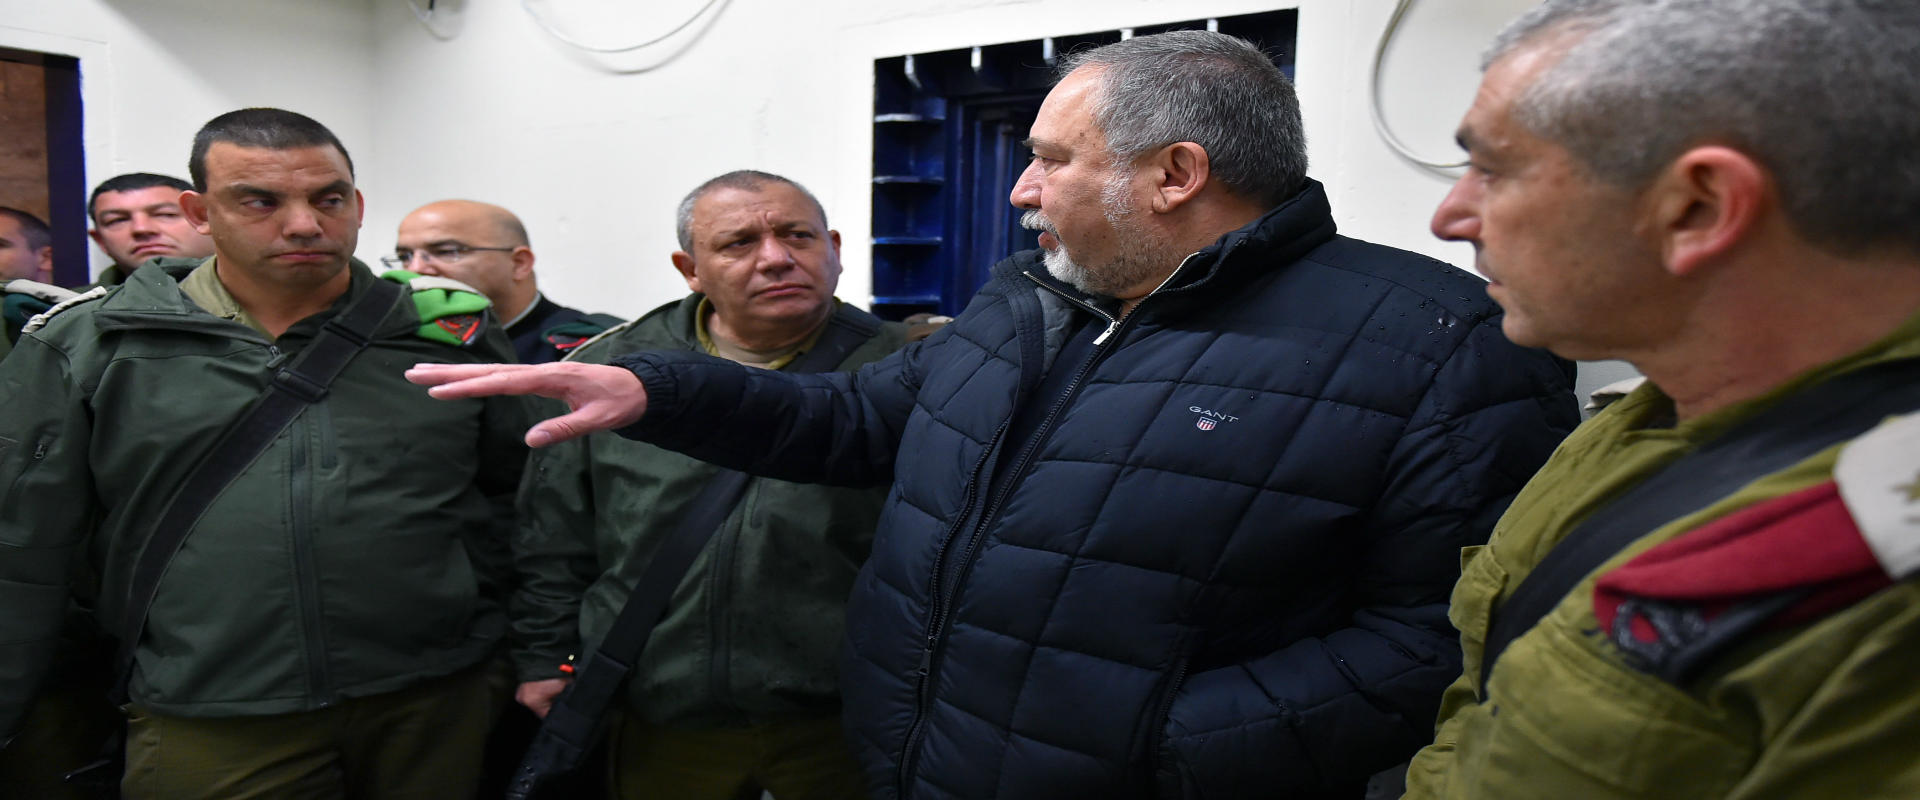 שר הביטחון אביגדור ליברמן בסיור בחברון